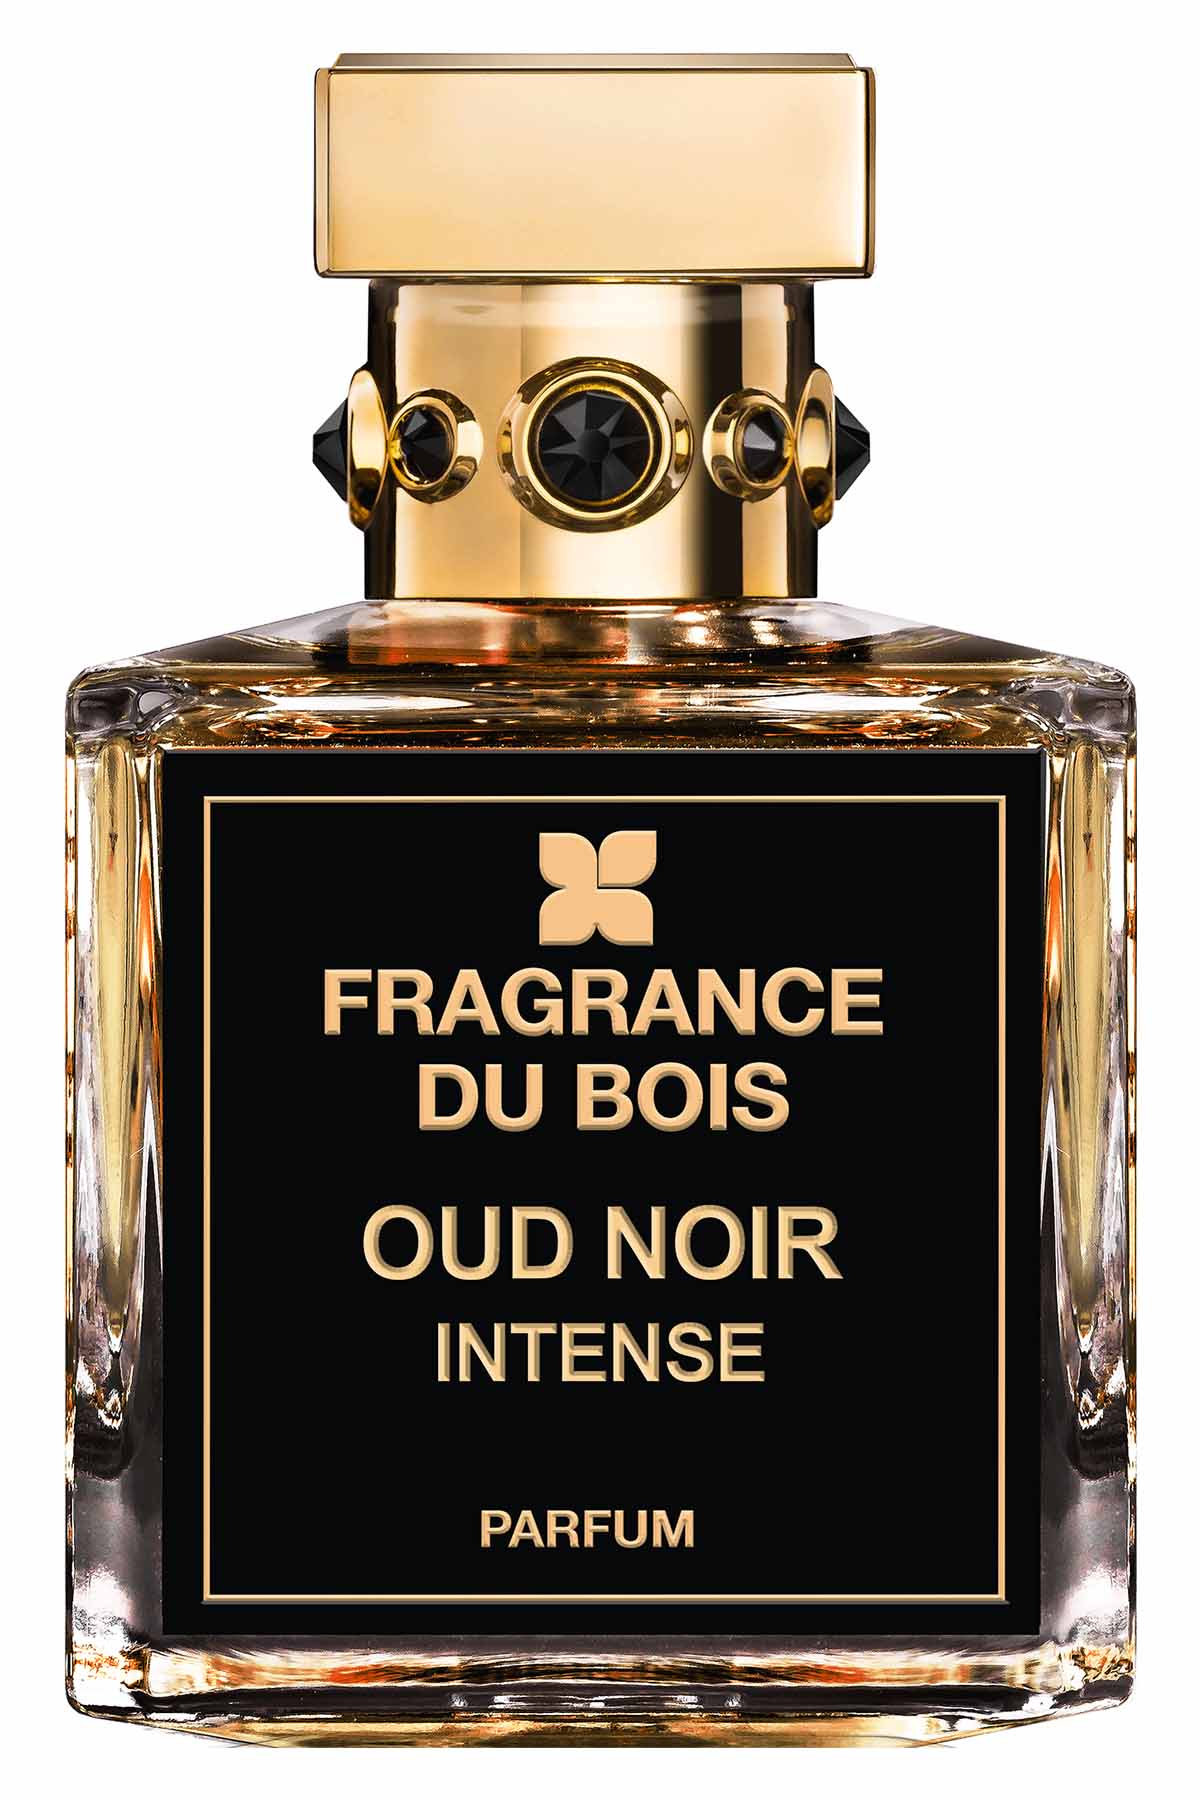 Fragrance Du Bois Oud Noir Intense Parfum